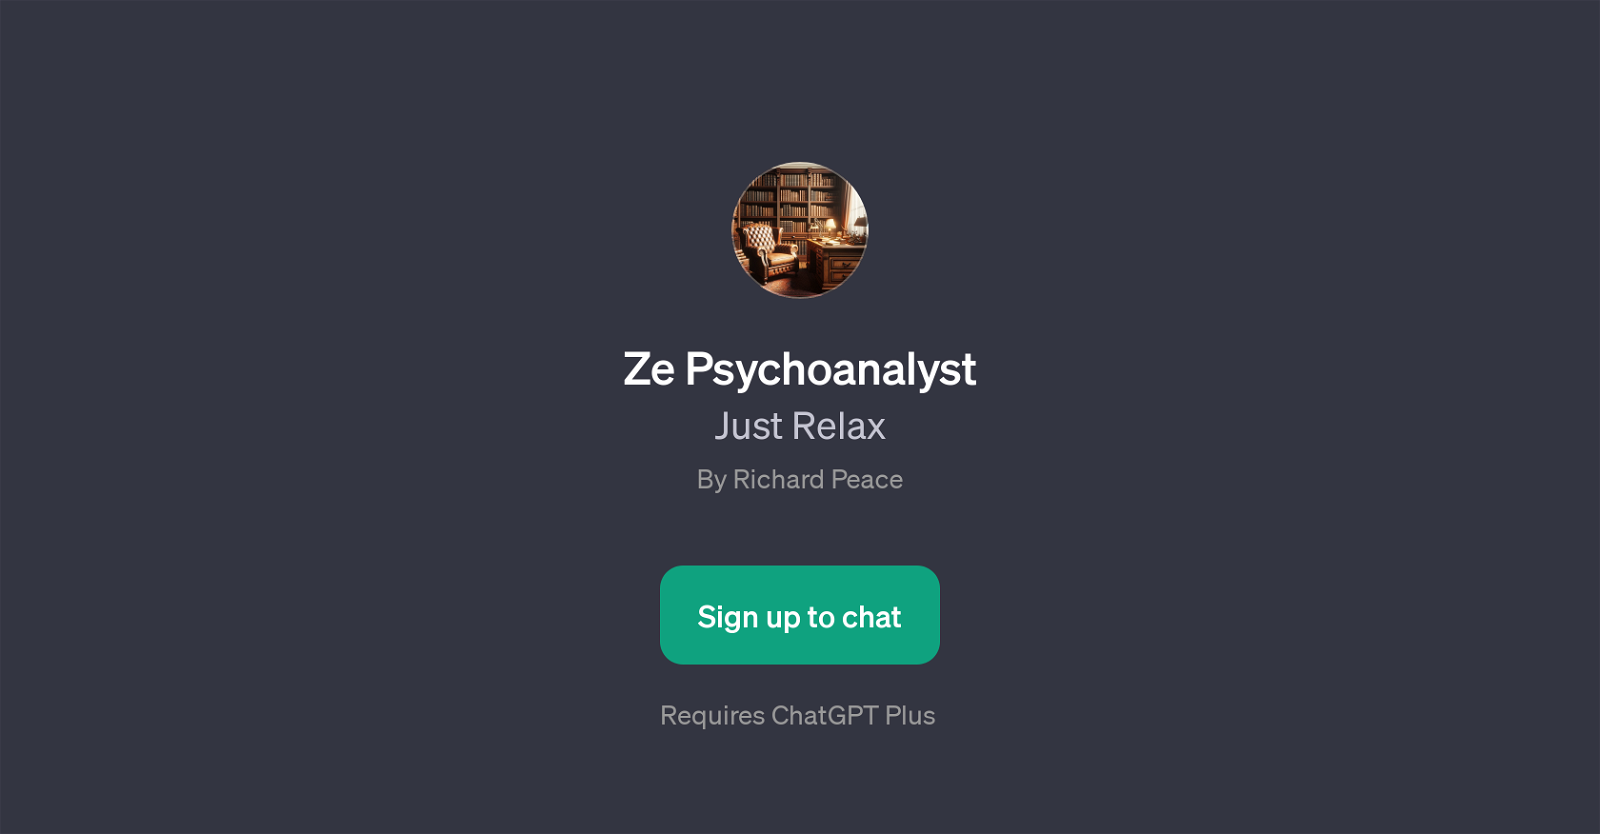 Ze Psychoanalyst website